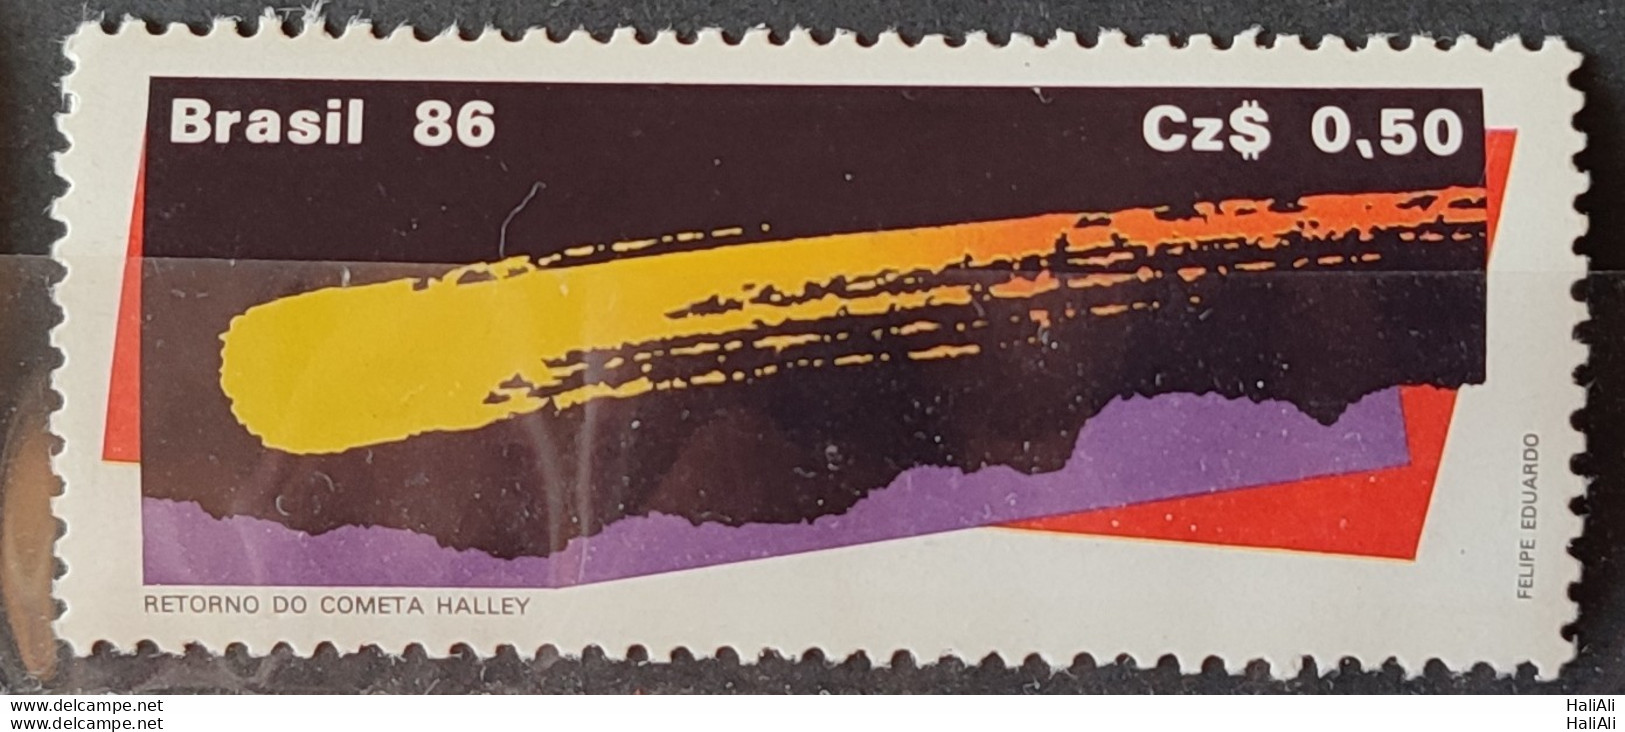 C 1507 Brazil Stamp Comet Halley Astronomy 1986.jpg - Ungebraucht